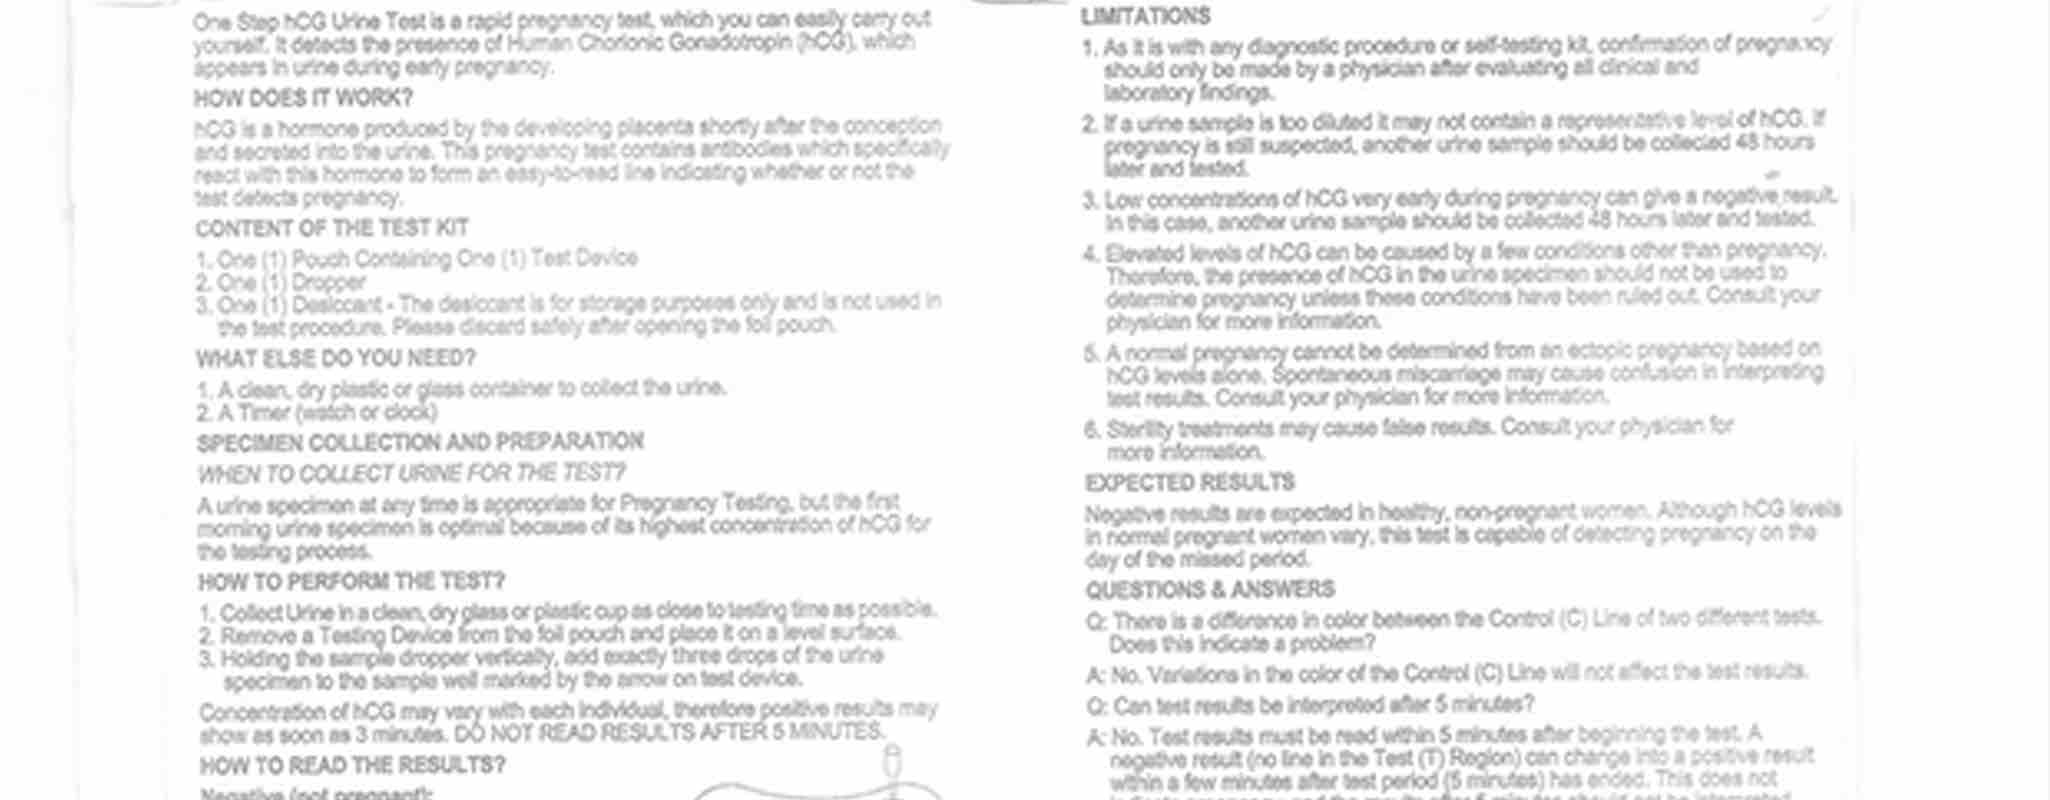 VeriQuick Pregnancy Test Instructions